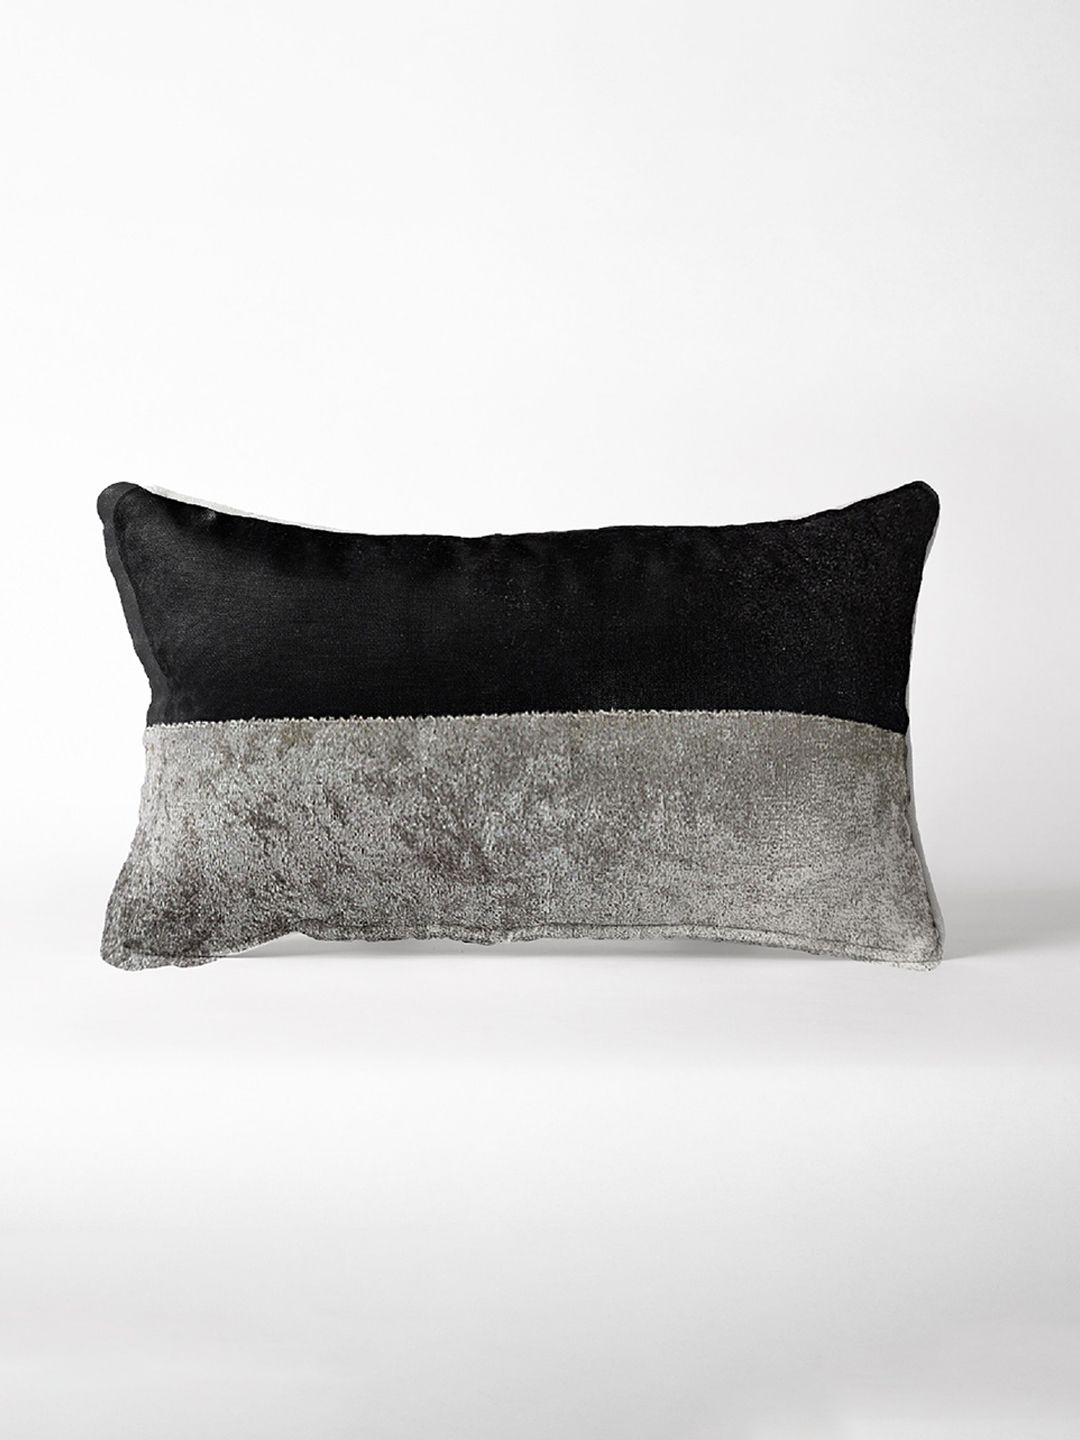 Pum Pum Black Black Grey Velvet Pillow Price in India